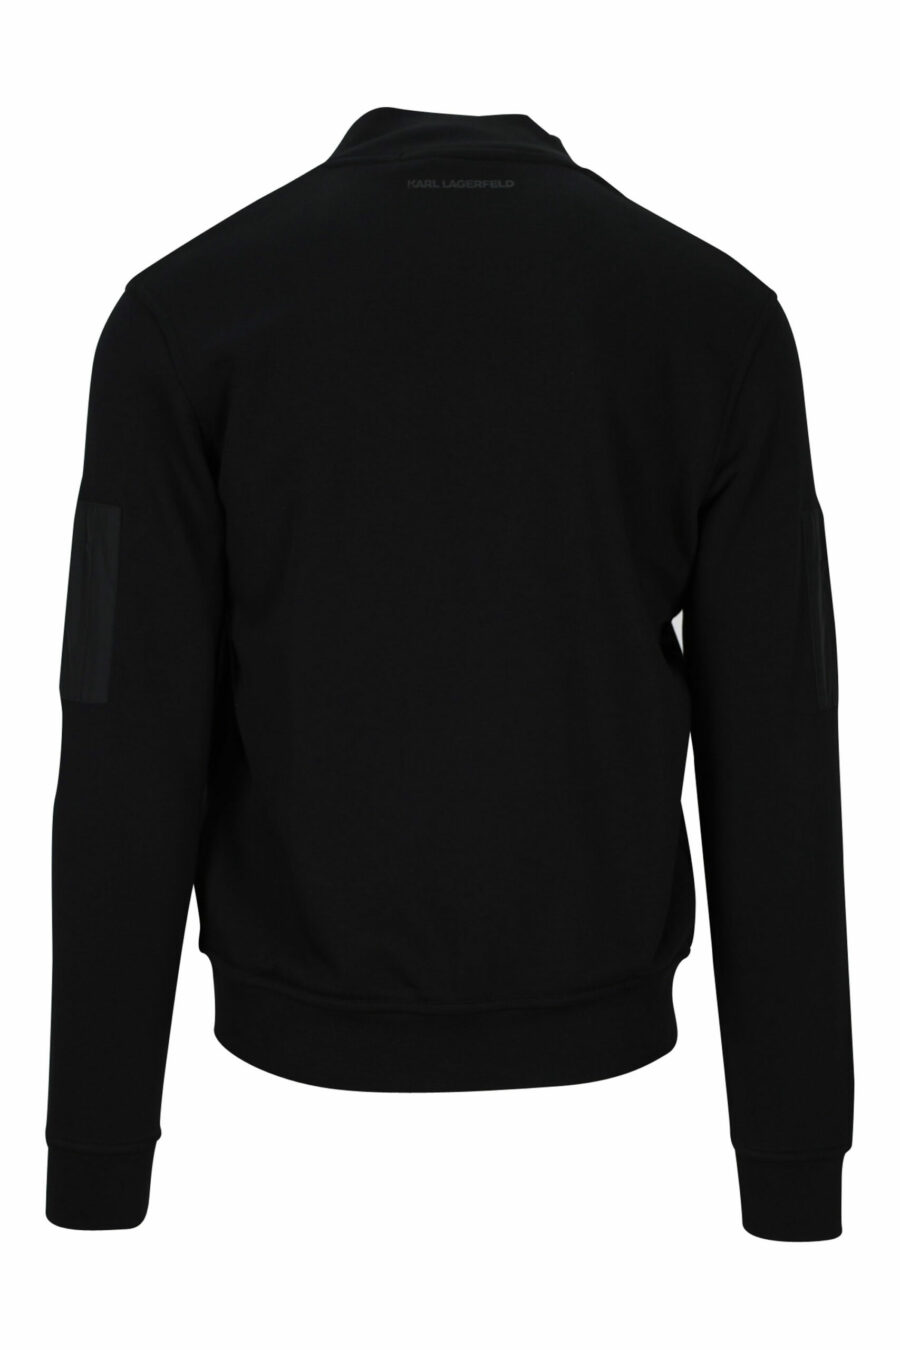 Schwarze Jacke mit Mini-Logo auf Abzeichen und Ärmeltaschen - 4062226654111 2 skaliert